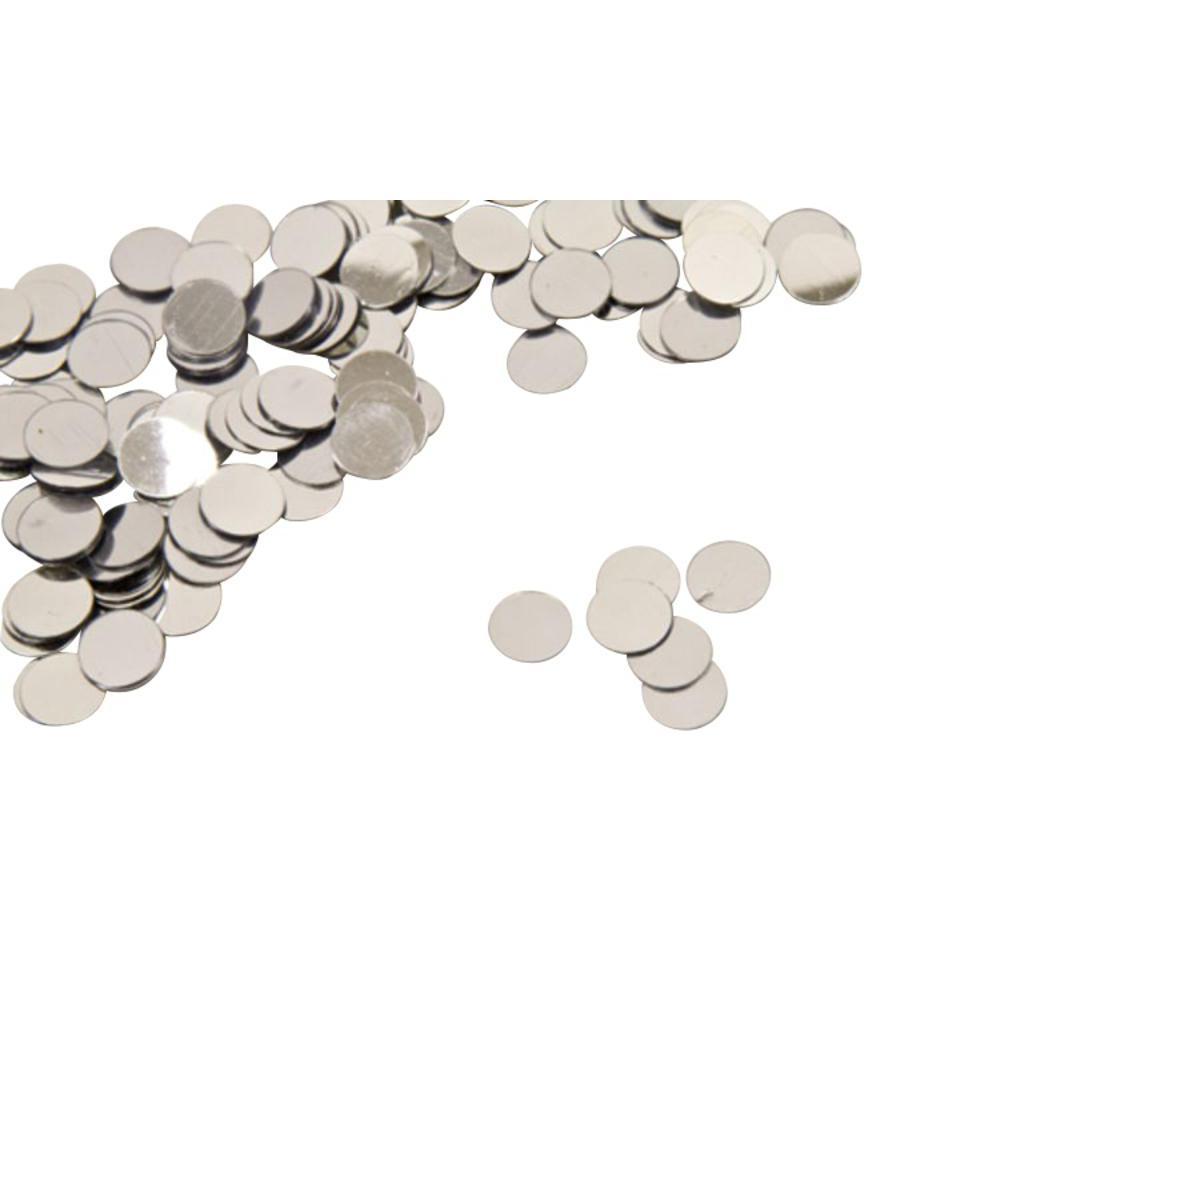 Confettis de table pastille - Plastique - 10 gr. - Gris argent